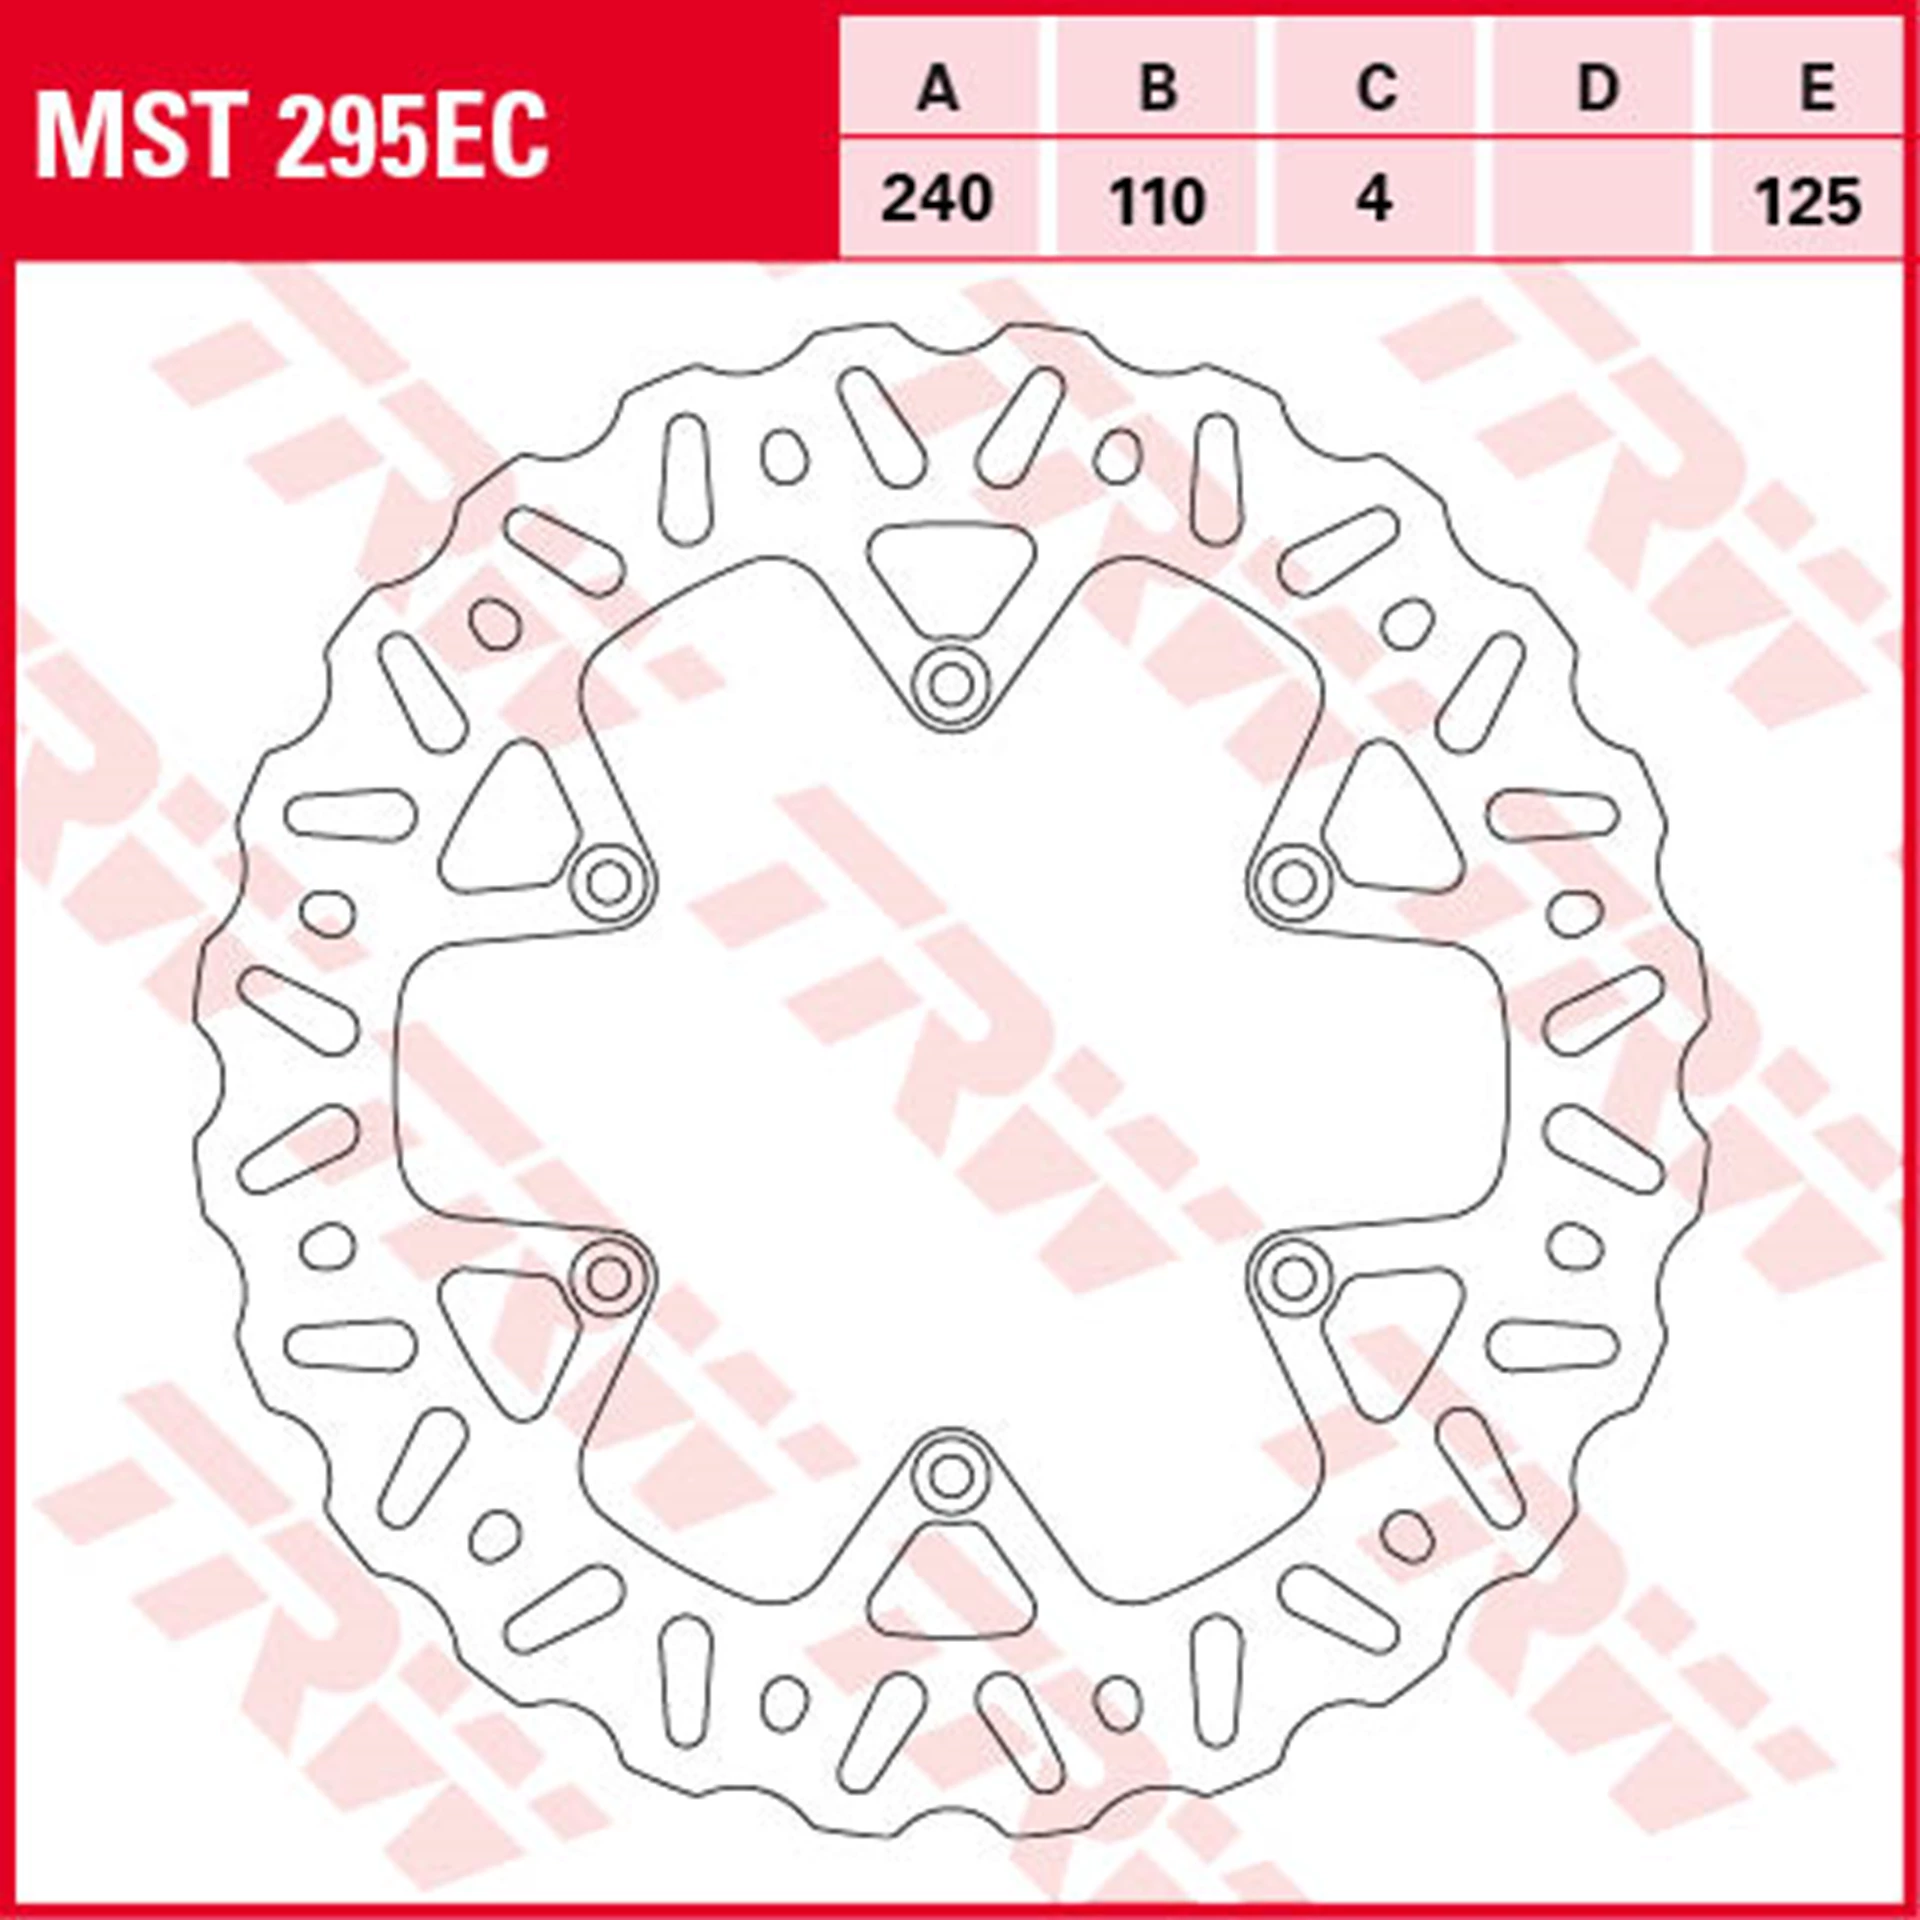 MST295EC